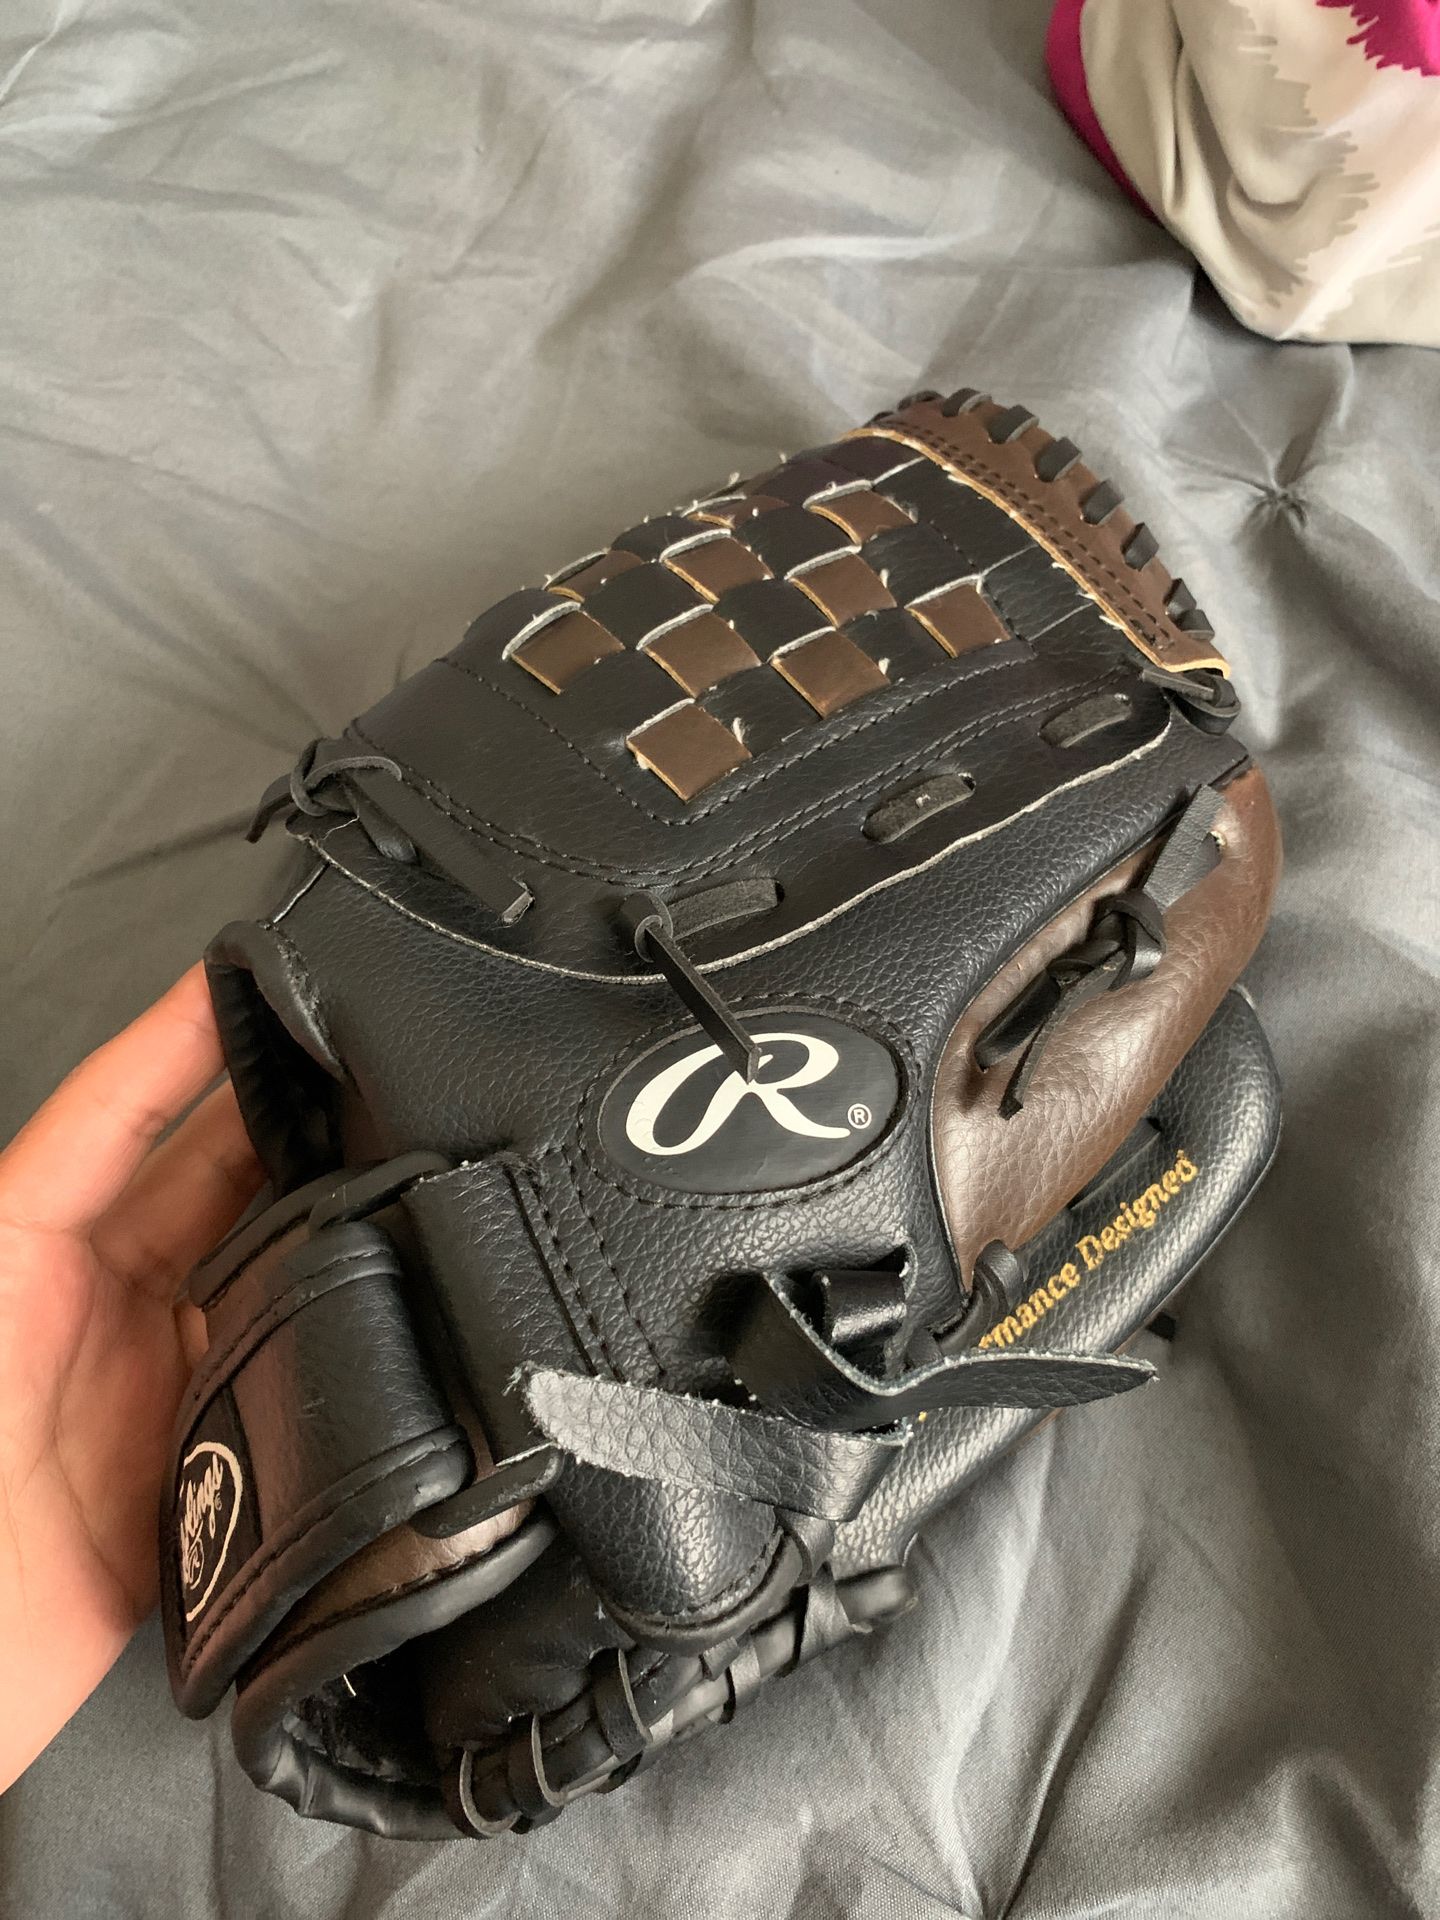 New softball glove